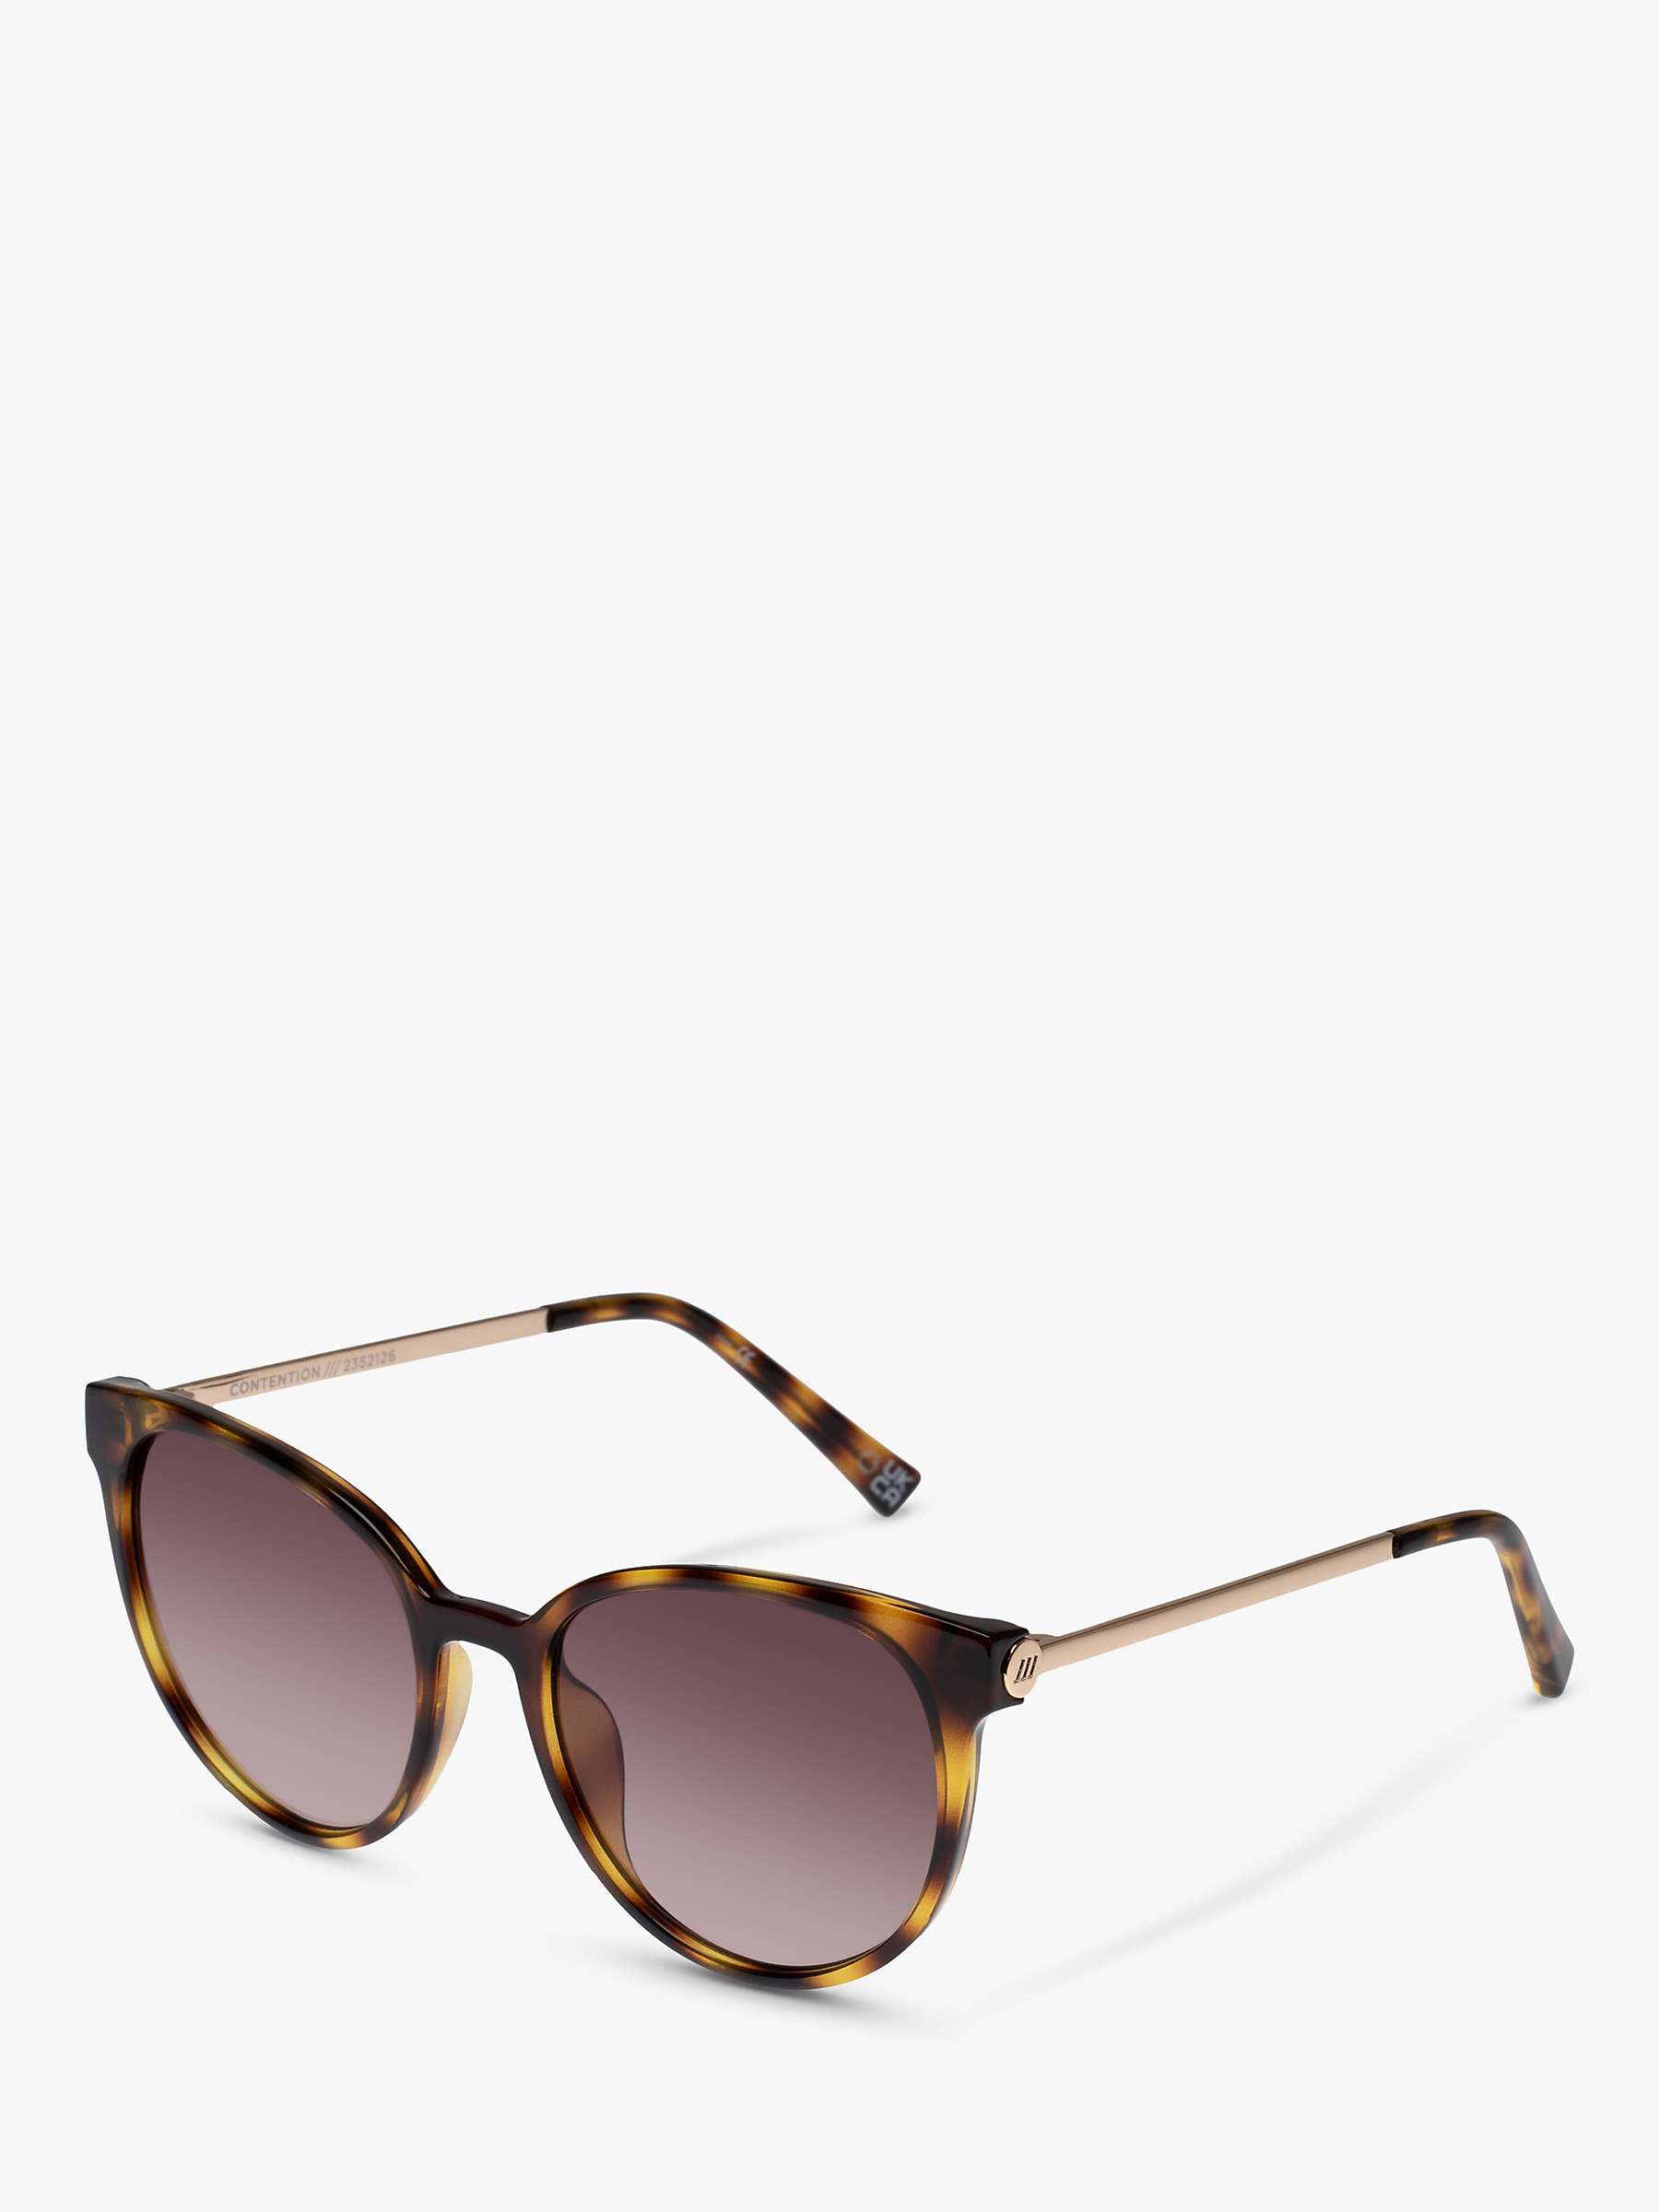 Buy Le Specs L5000172 Women's Contention Oval Sunglasses, Tortoise/Brown Gradient Online at johnlewis.com